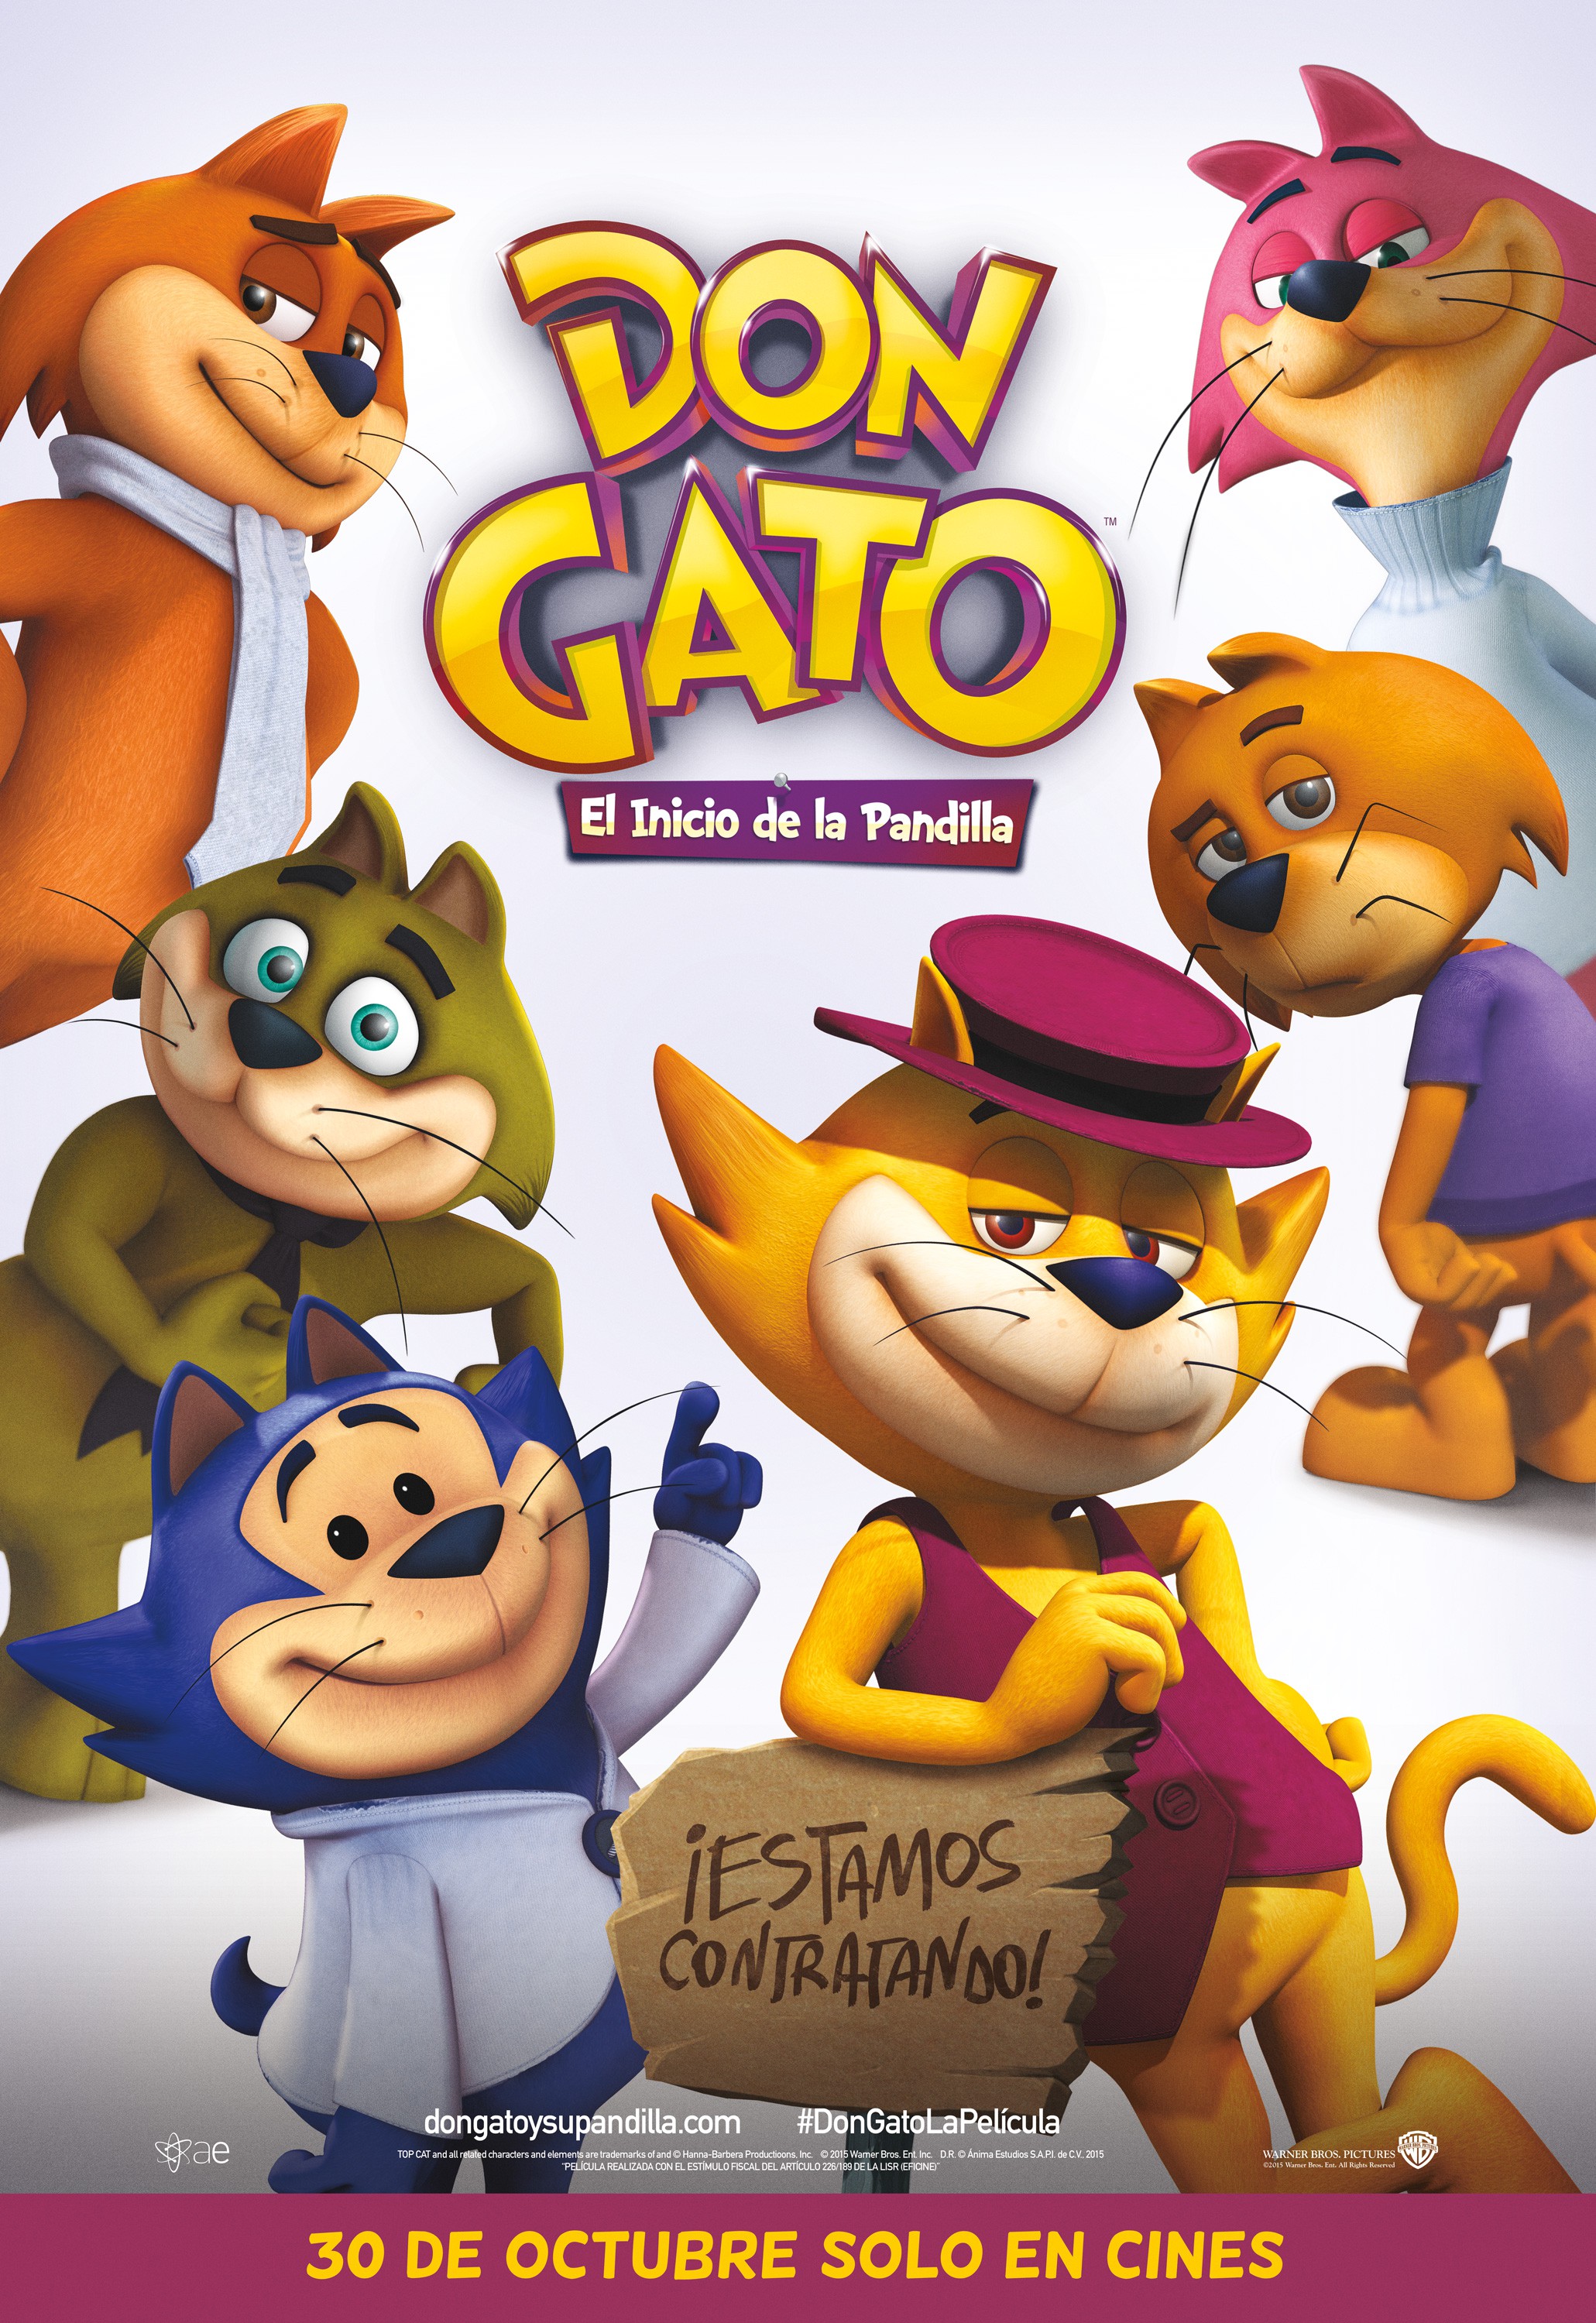 Don Gato, el inicio de la pandilla